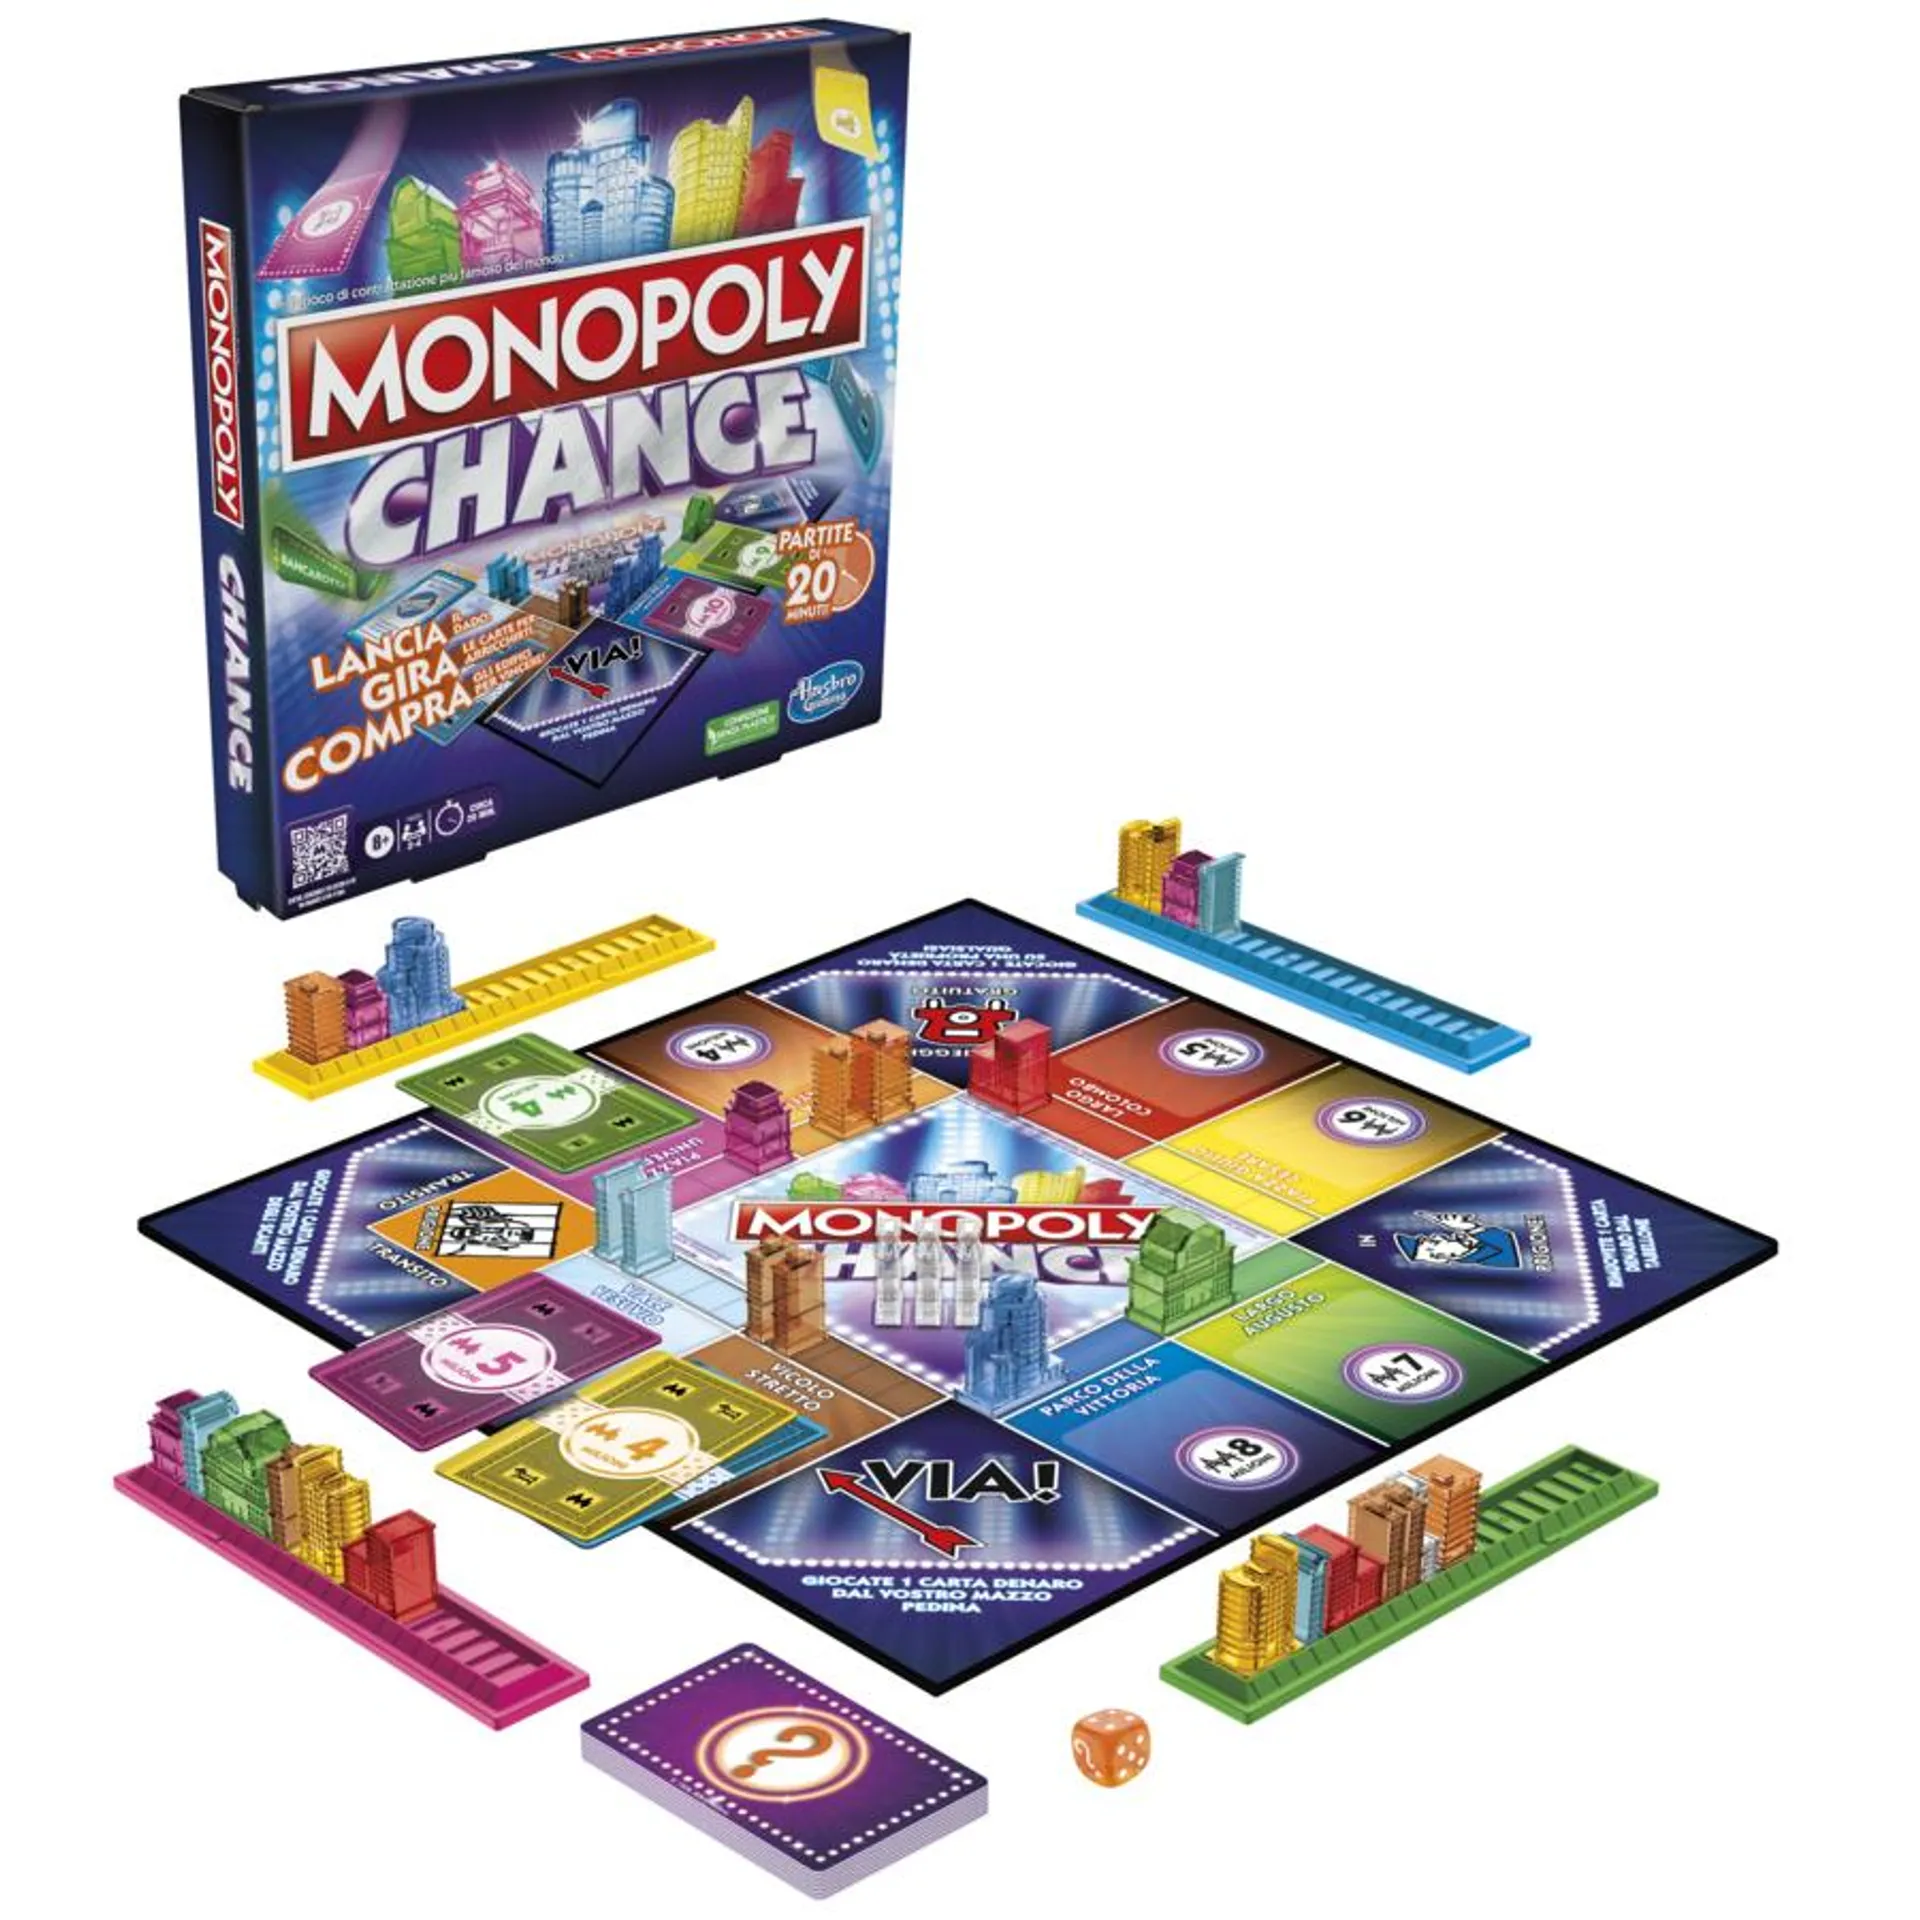 Monopoly chance – gioco da tavolo, gioco monopoly veloce, 20 min. circa, dagli 8 anni in su